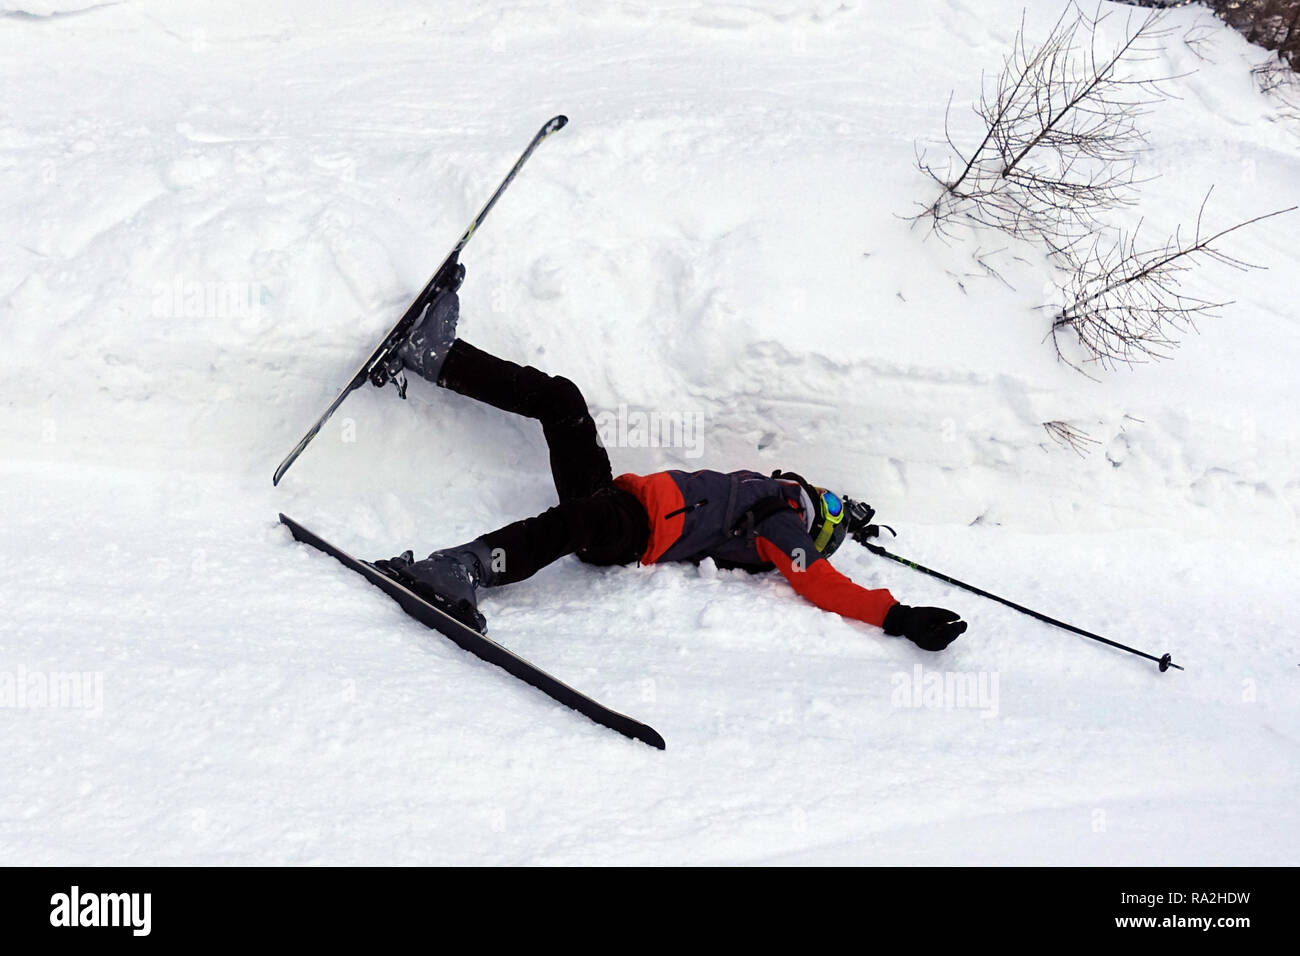 09.02.2018, Suedtirol, Reischach, Italien, Junge ist beim Skifahren gestuerzt. 00S180209D078CARO.JPG [MODEL RELEASE: YES, PROPERTY RELEASE: NOT APPLIC Stock Photo